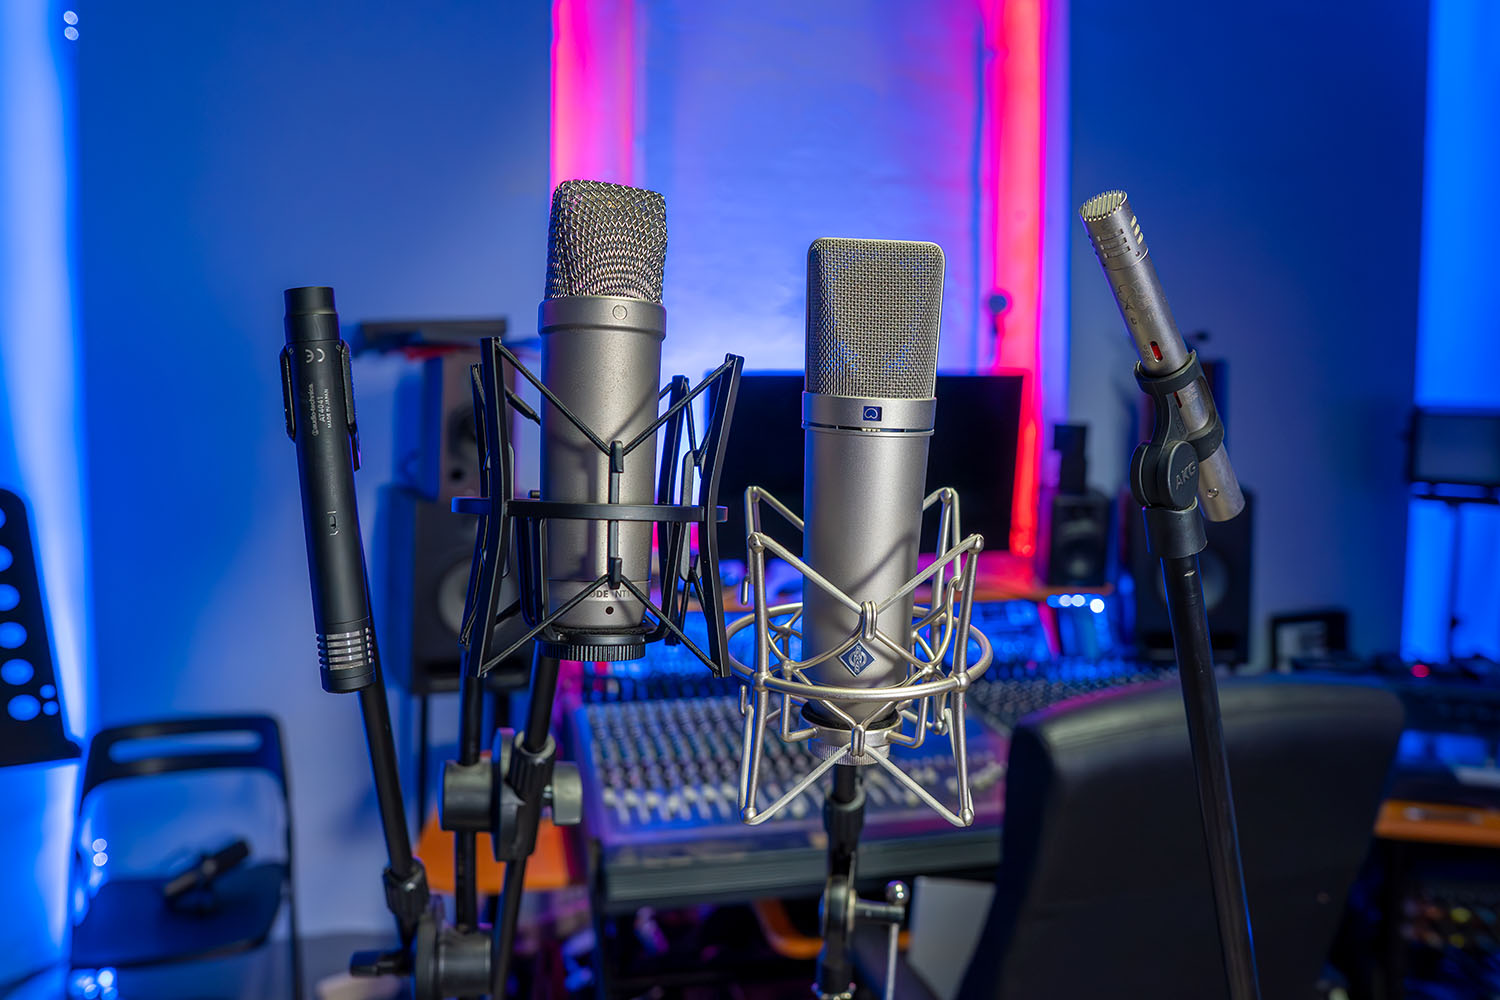 Condenser microphones in the studio